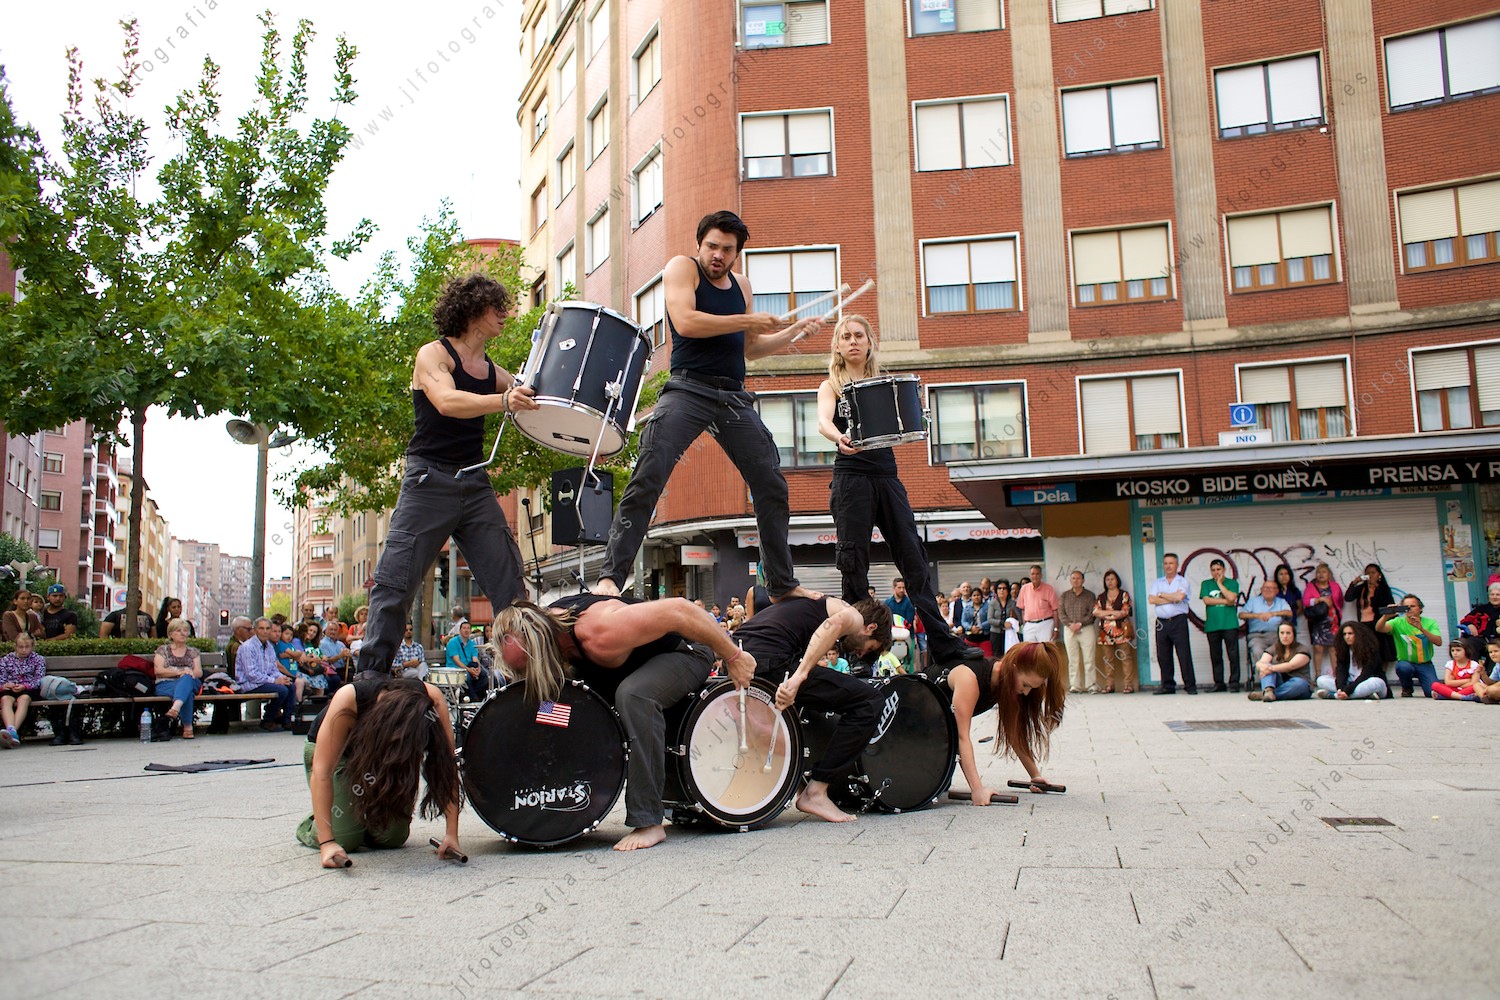 castillo humano con los miembros del grupo Tred dance en la plaza bide Onera de Barakaldo